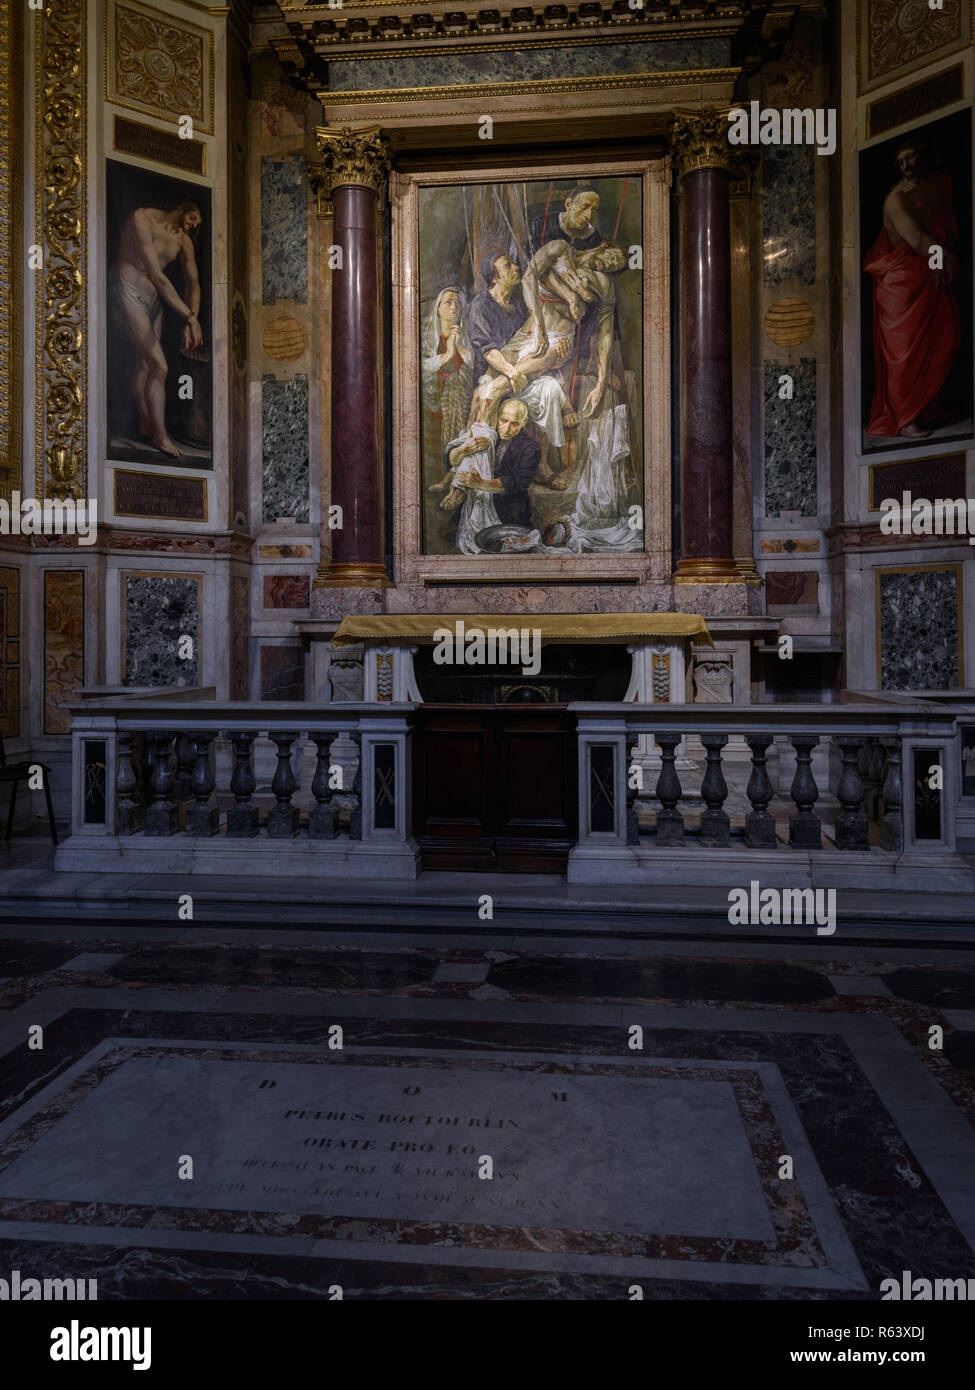 Cappella della Passione, Church of the Gesù, Rome, Italy Stock Photo